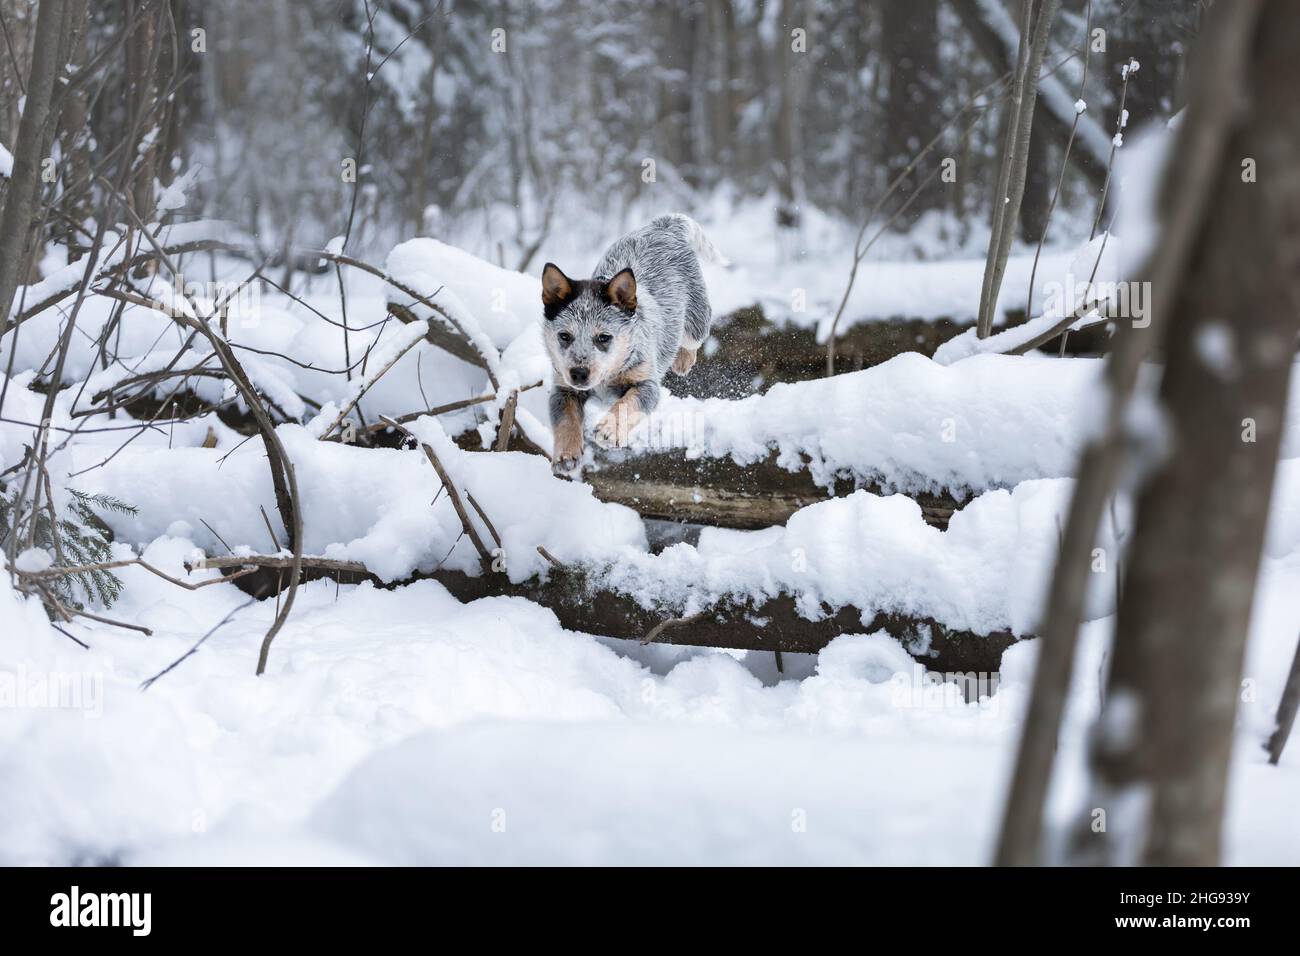 Esecuzione attiva cucciolo di bestiame australiano cane o blu Heeler all'aperto nella foresta invernale con neve Foto Stock